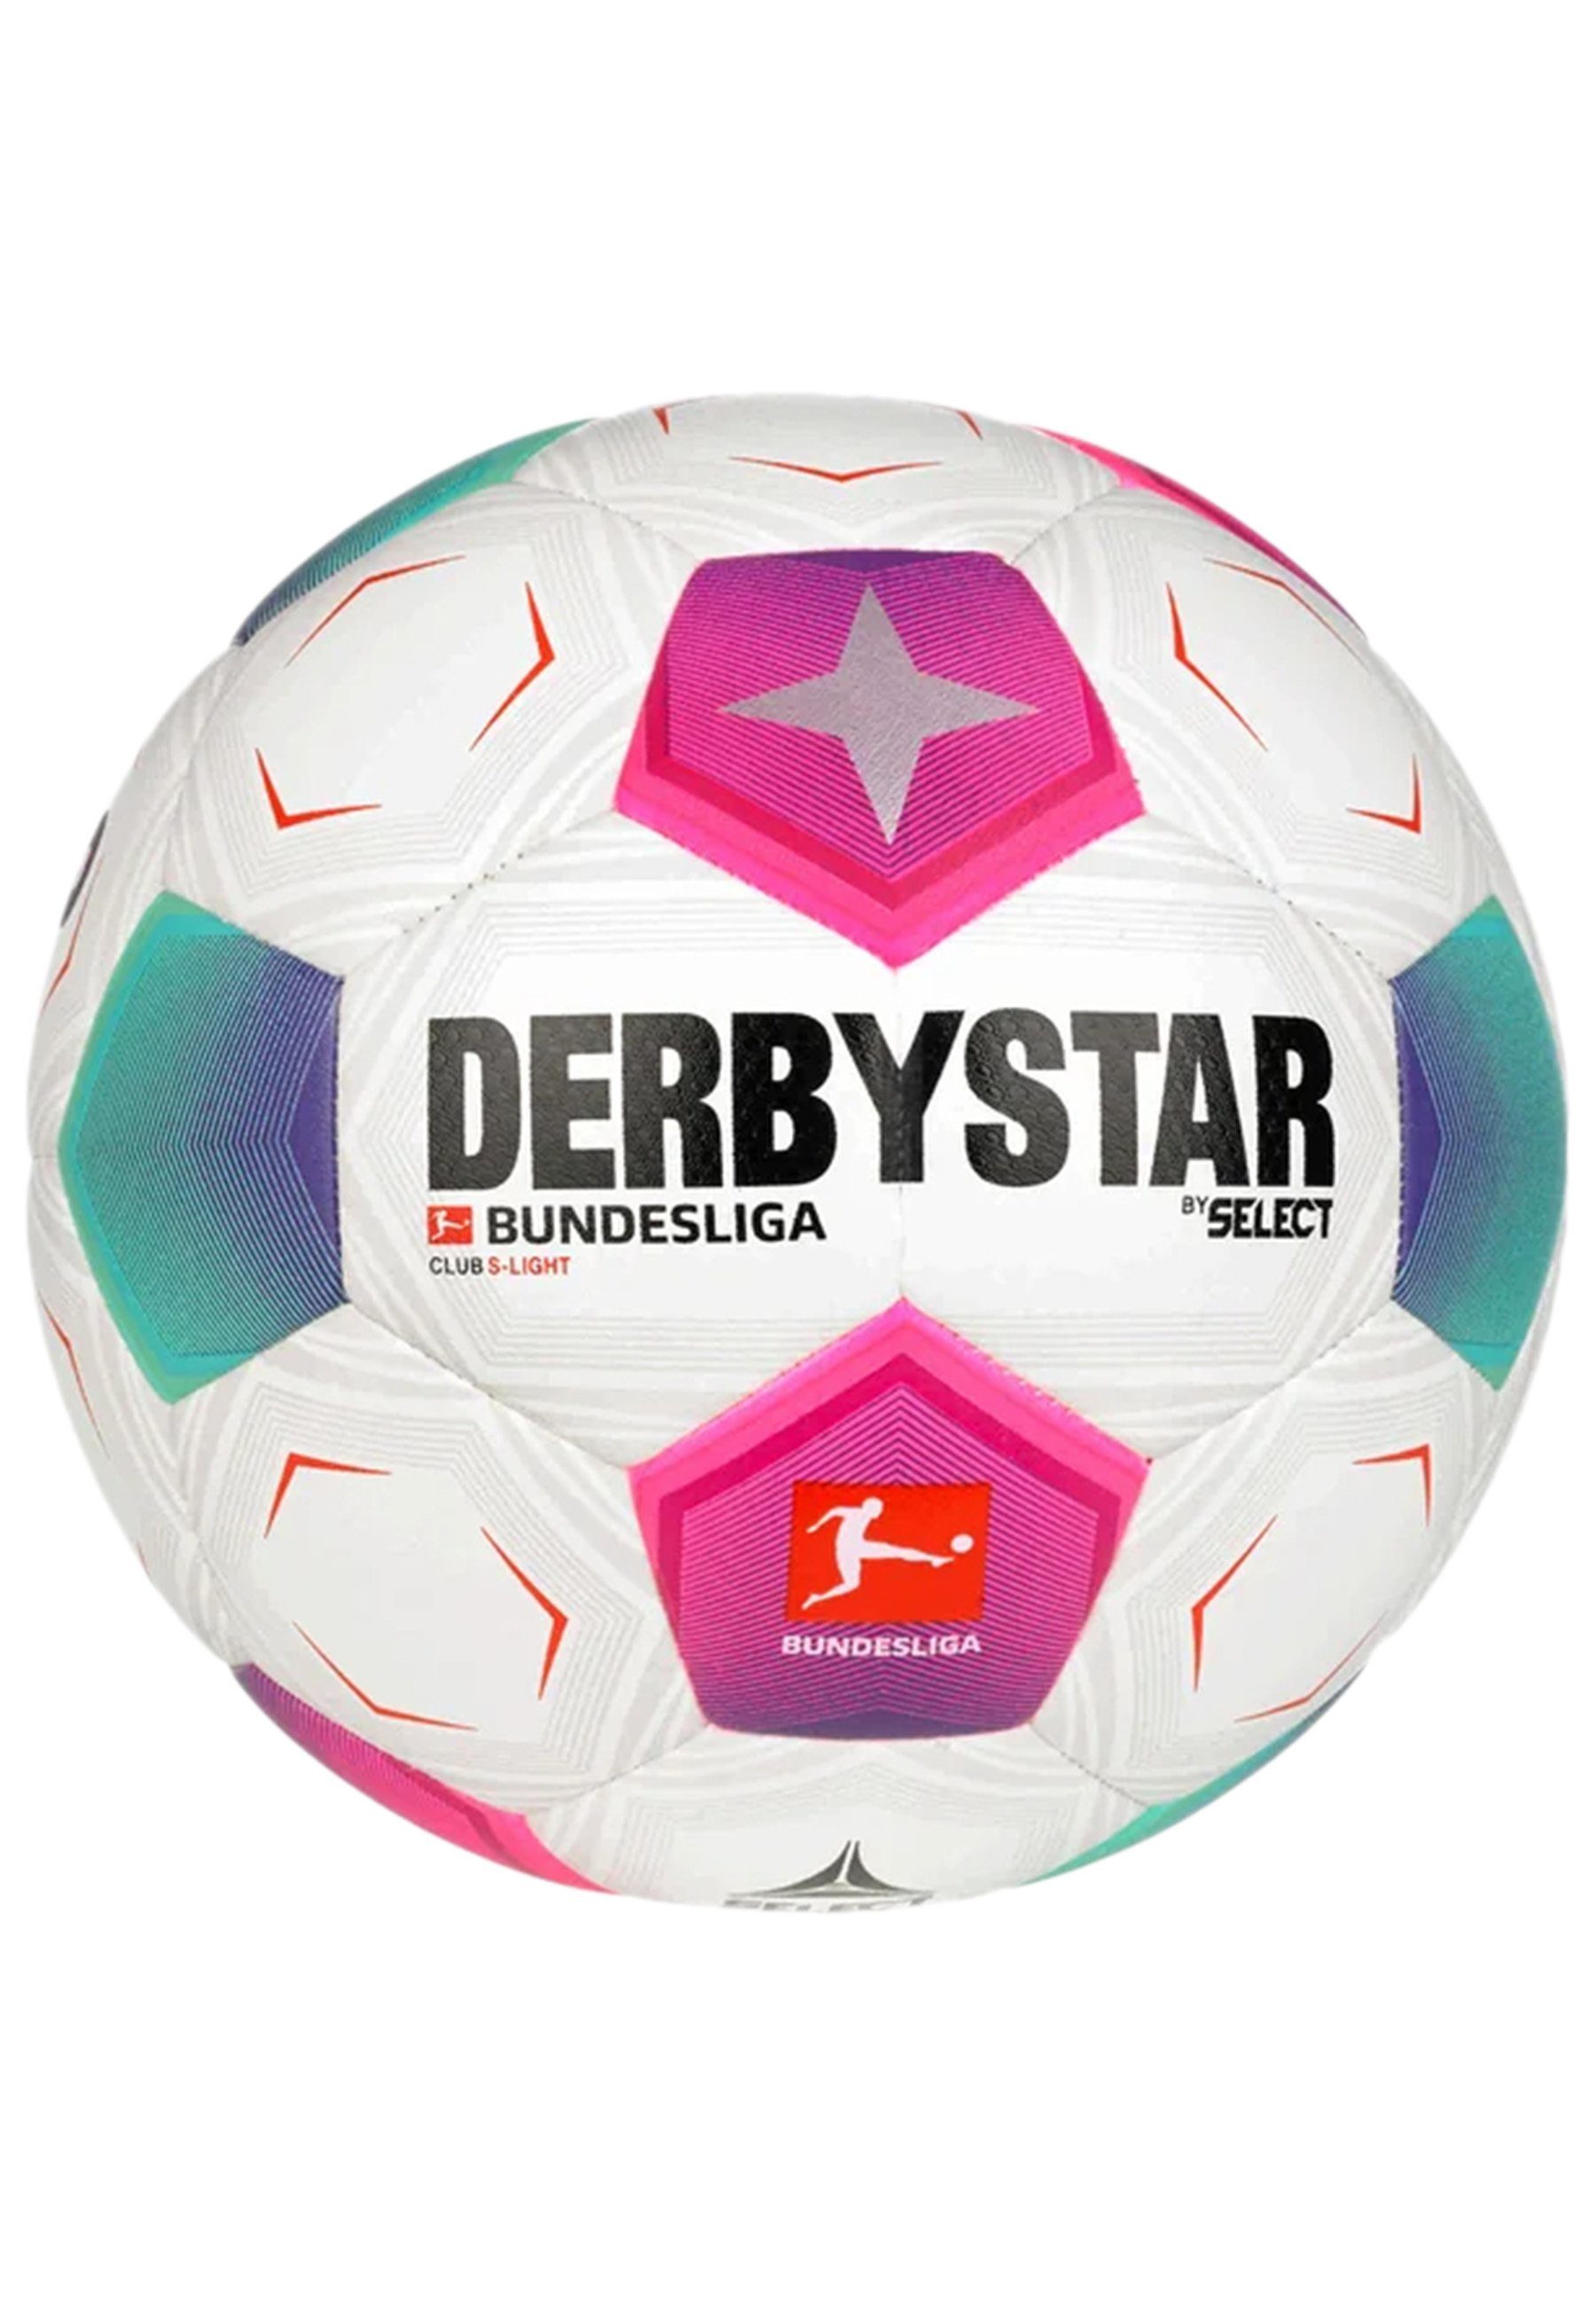 Derbystar Fußball Bundesliga Club S-Light